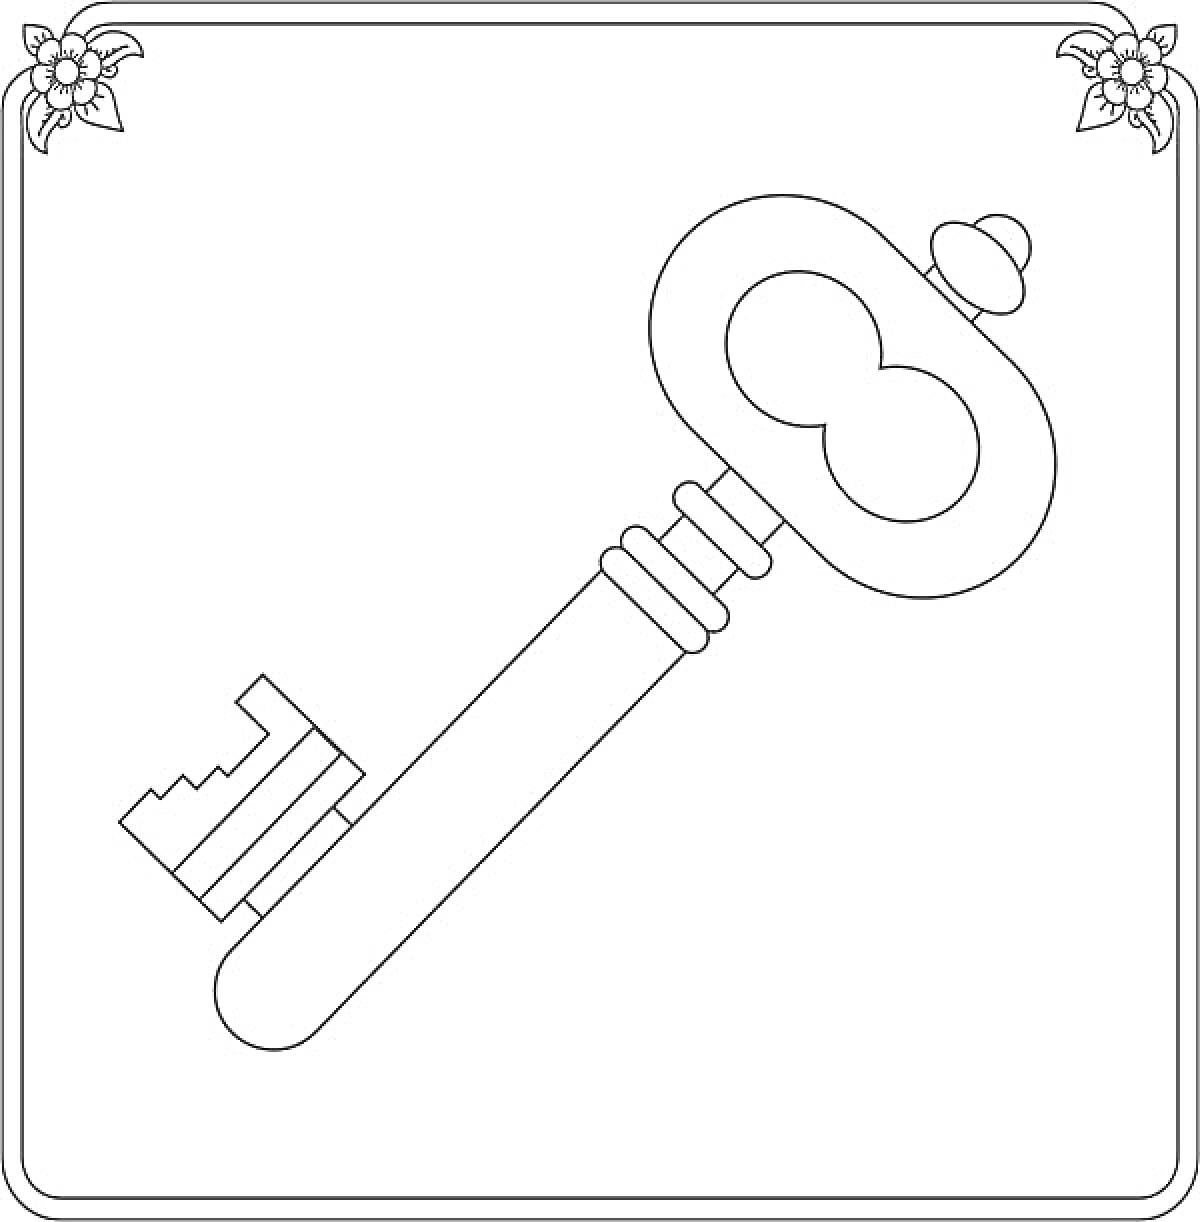 Раскраска Ключ с декоративными элементами, цветами на углах рамки